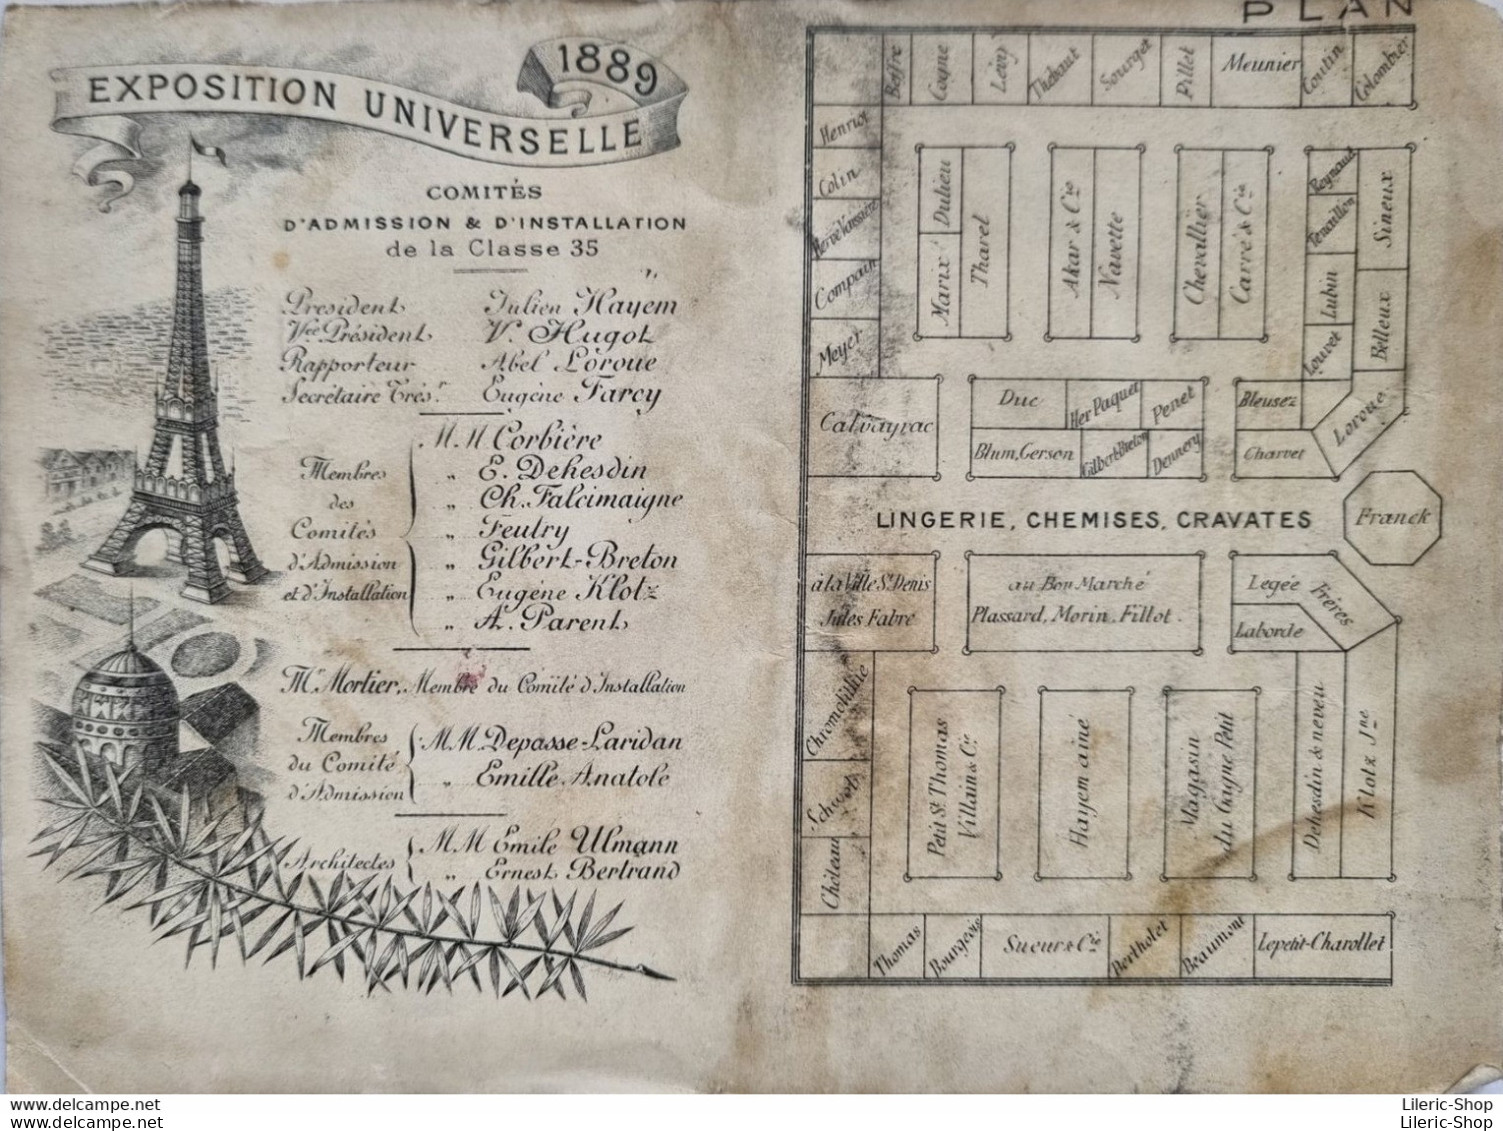 PARIS - Souvenir de l'Exposition Universelle de 1889 - offert par les exposants de la classe 35 - Fascicule en accordéon